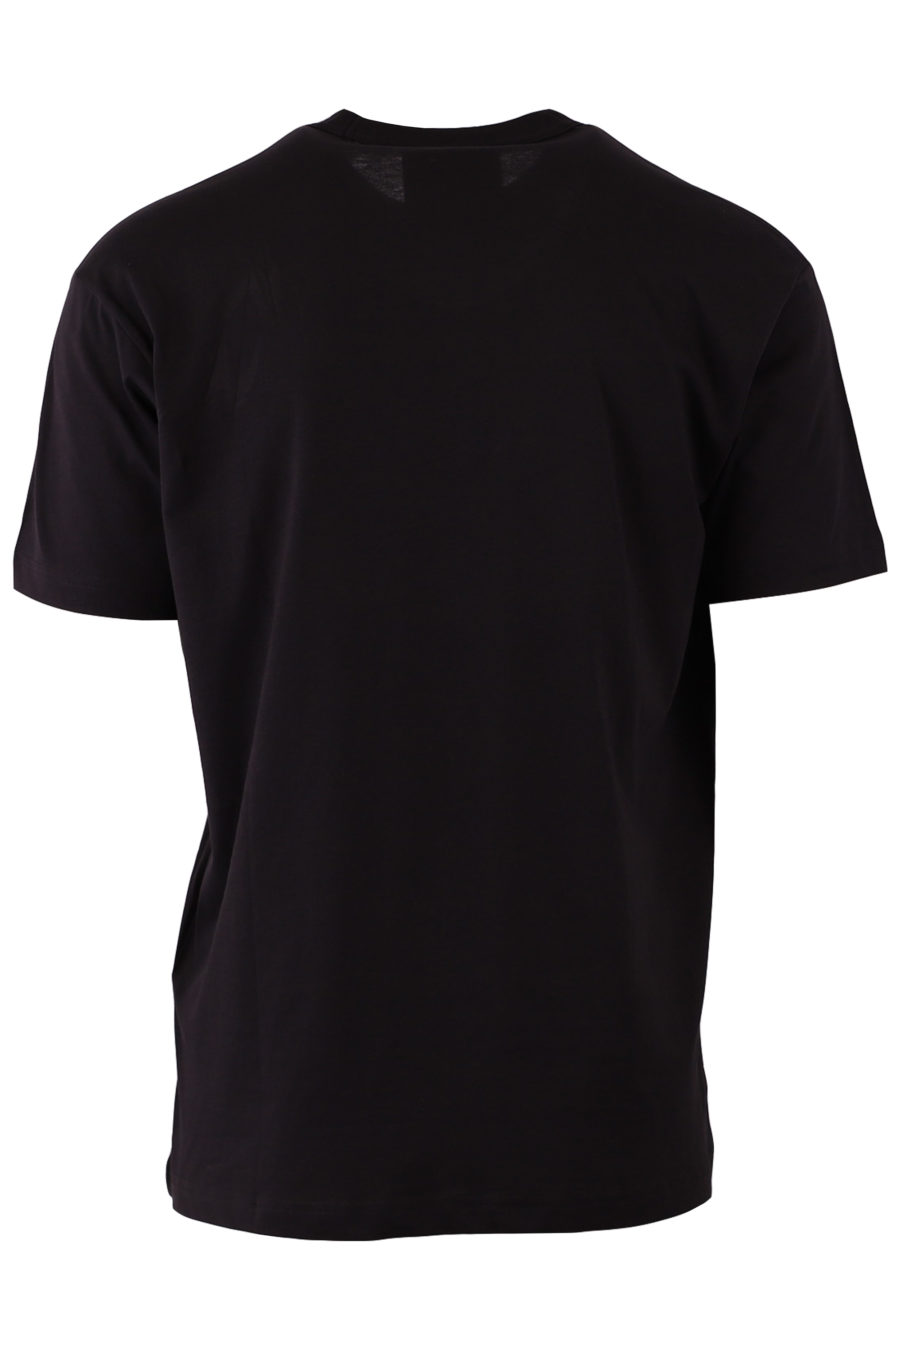 Black multilogo T-shirt - b4027e24f806d9e0504cb1bd943e449a3376fb69